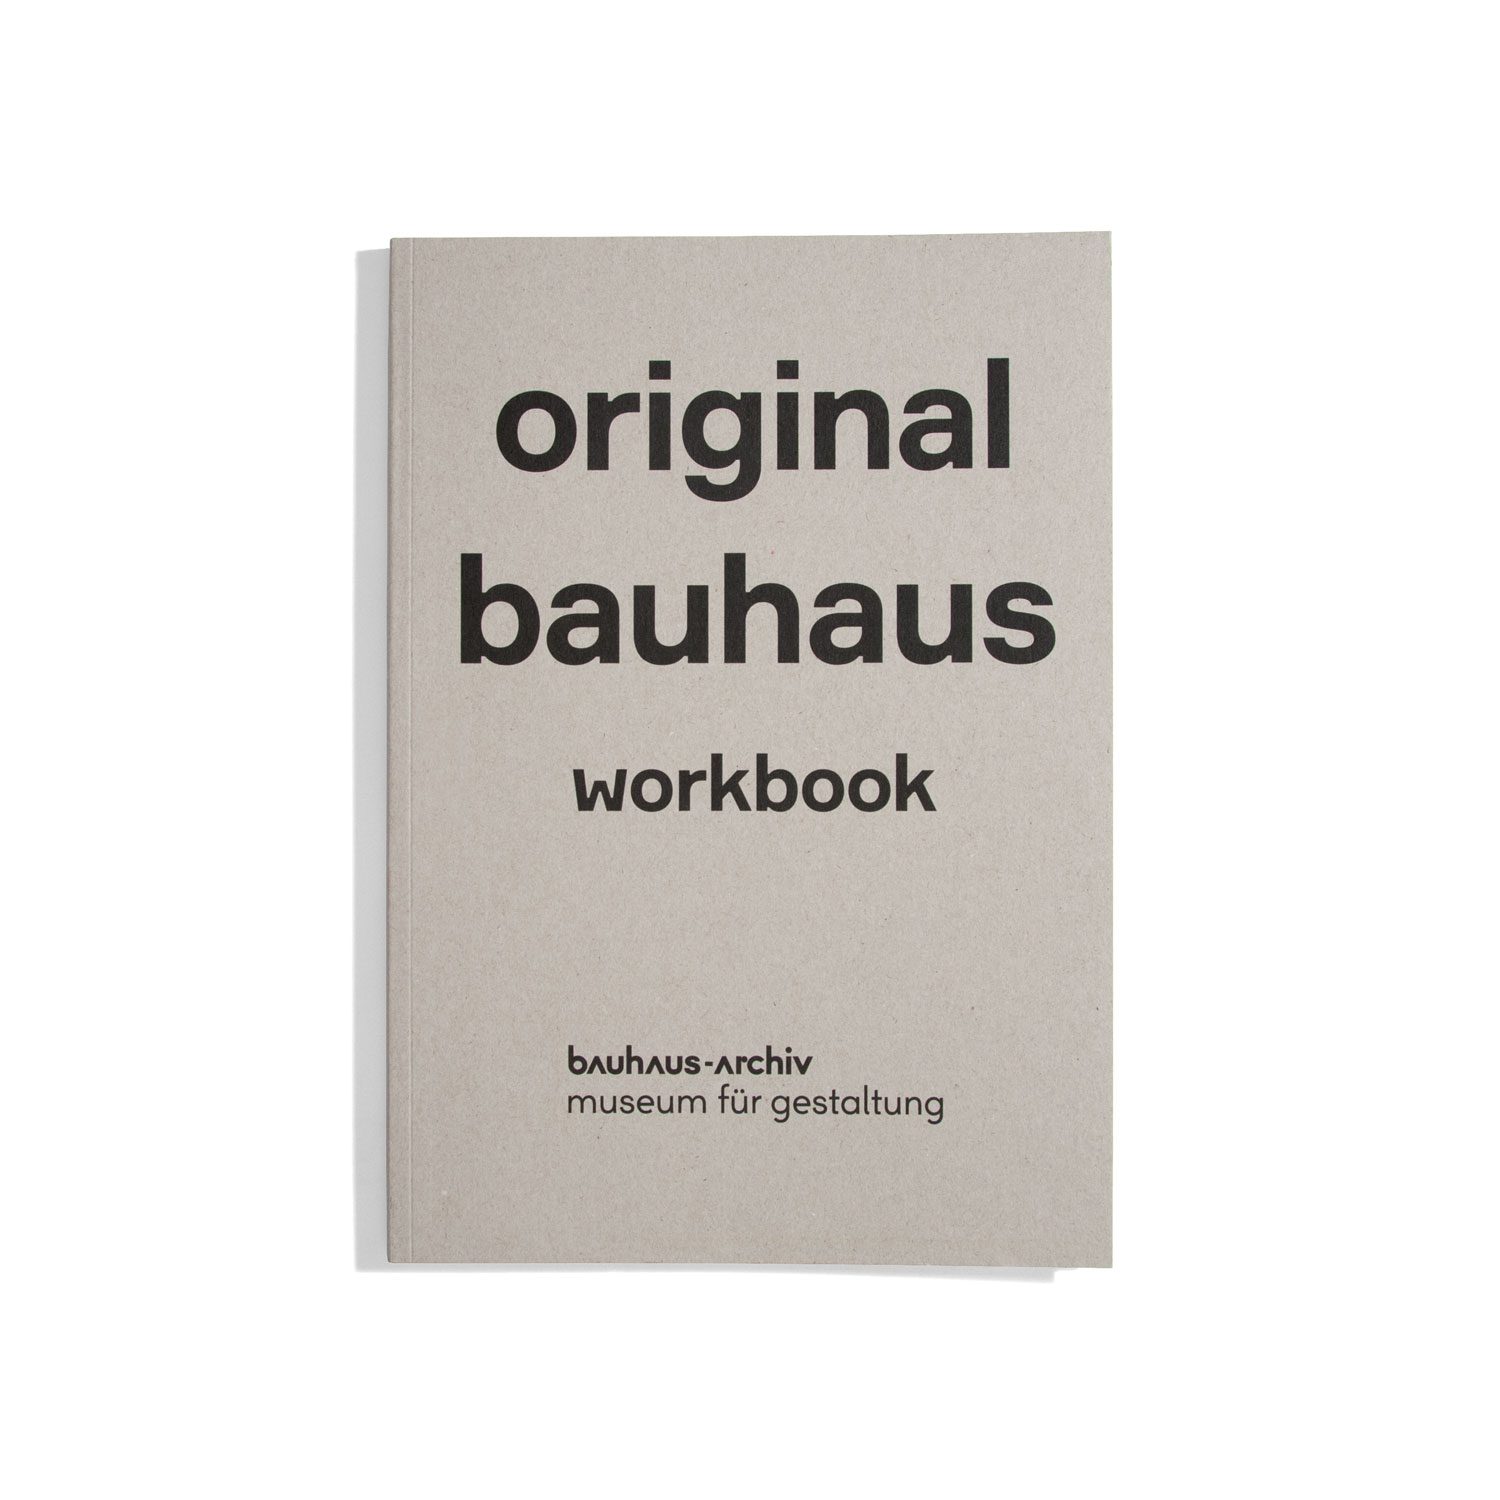 original bauhaus - workbook - bauhaus-archiv museum für gestaltung